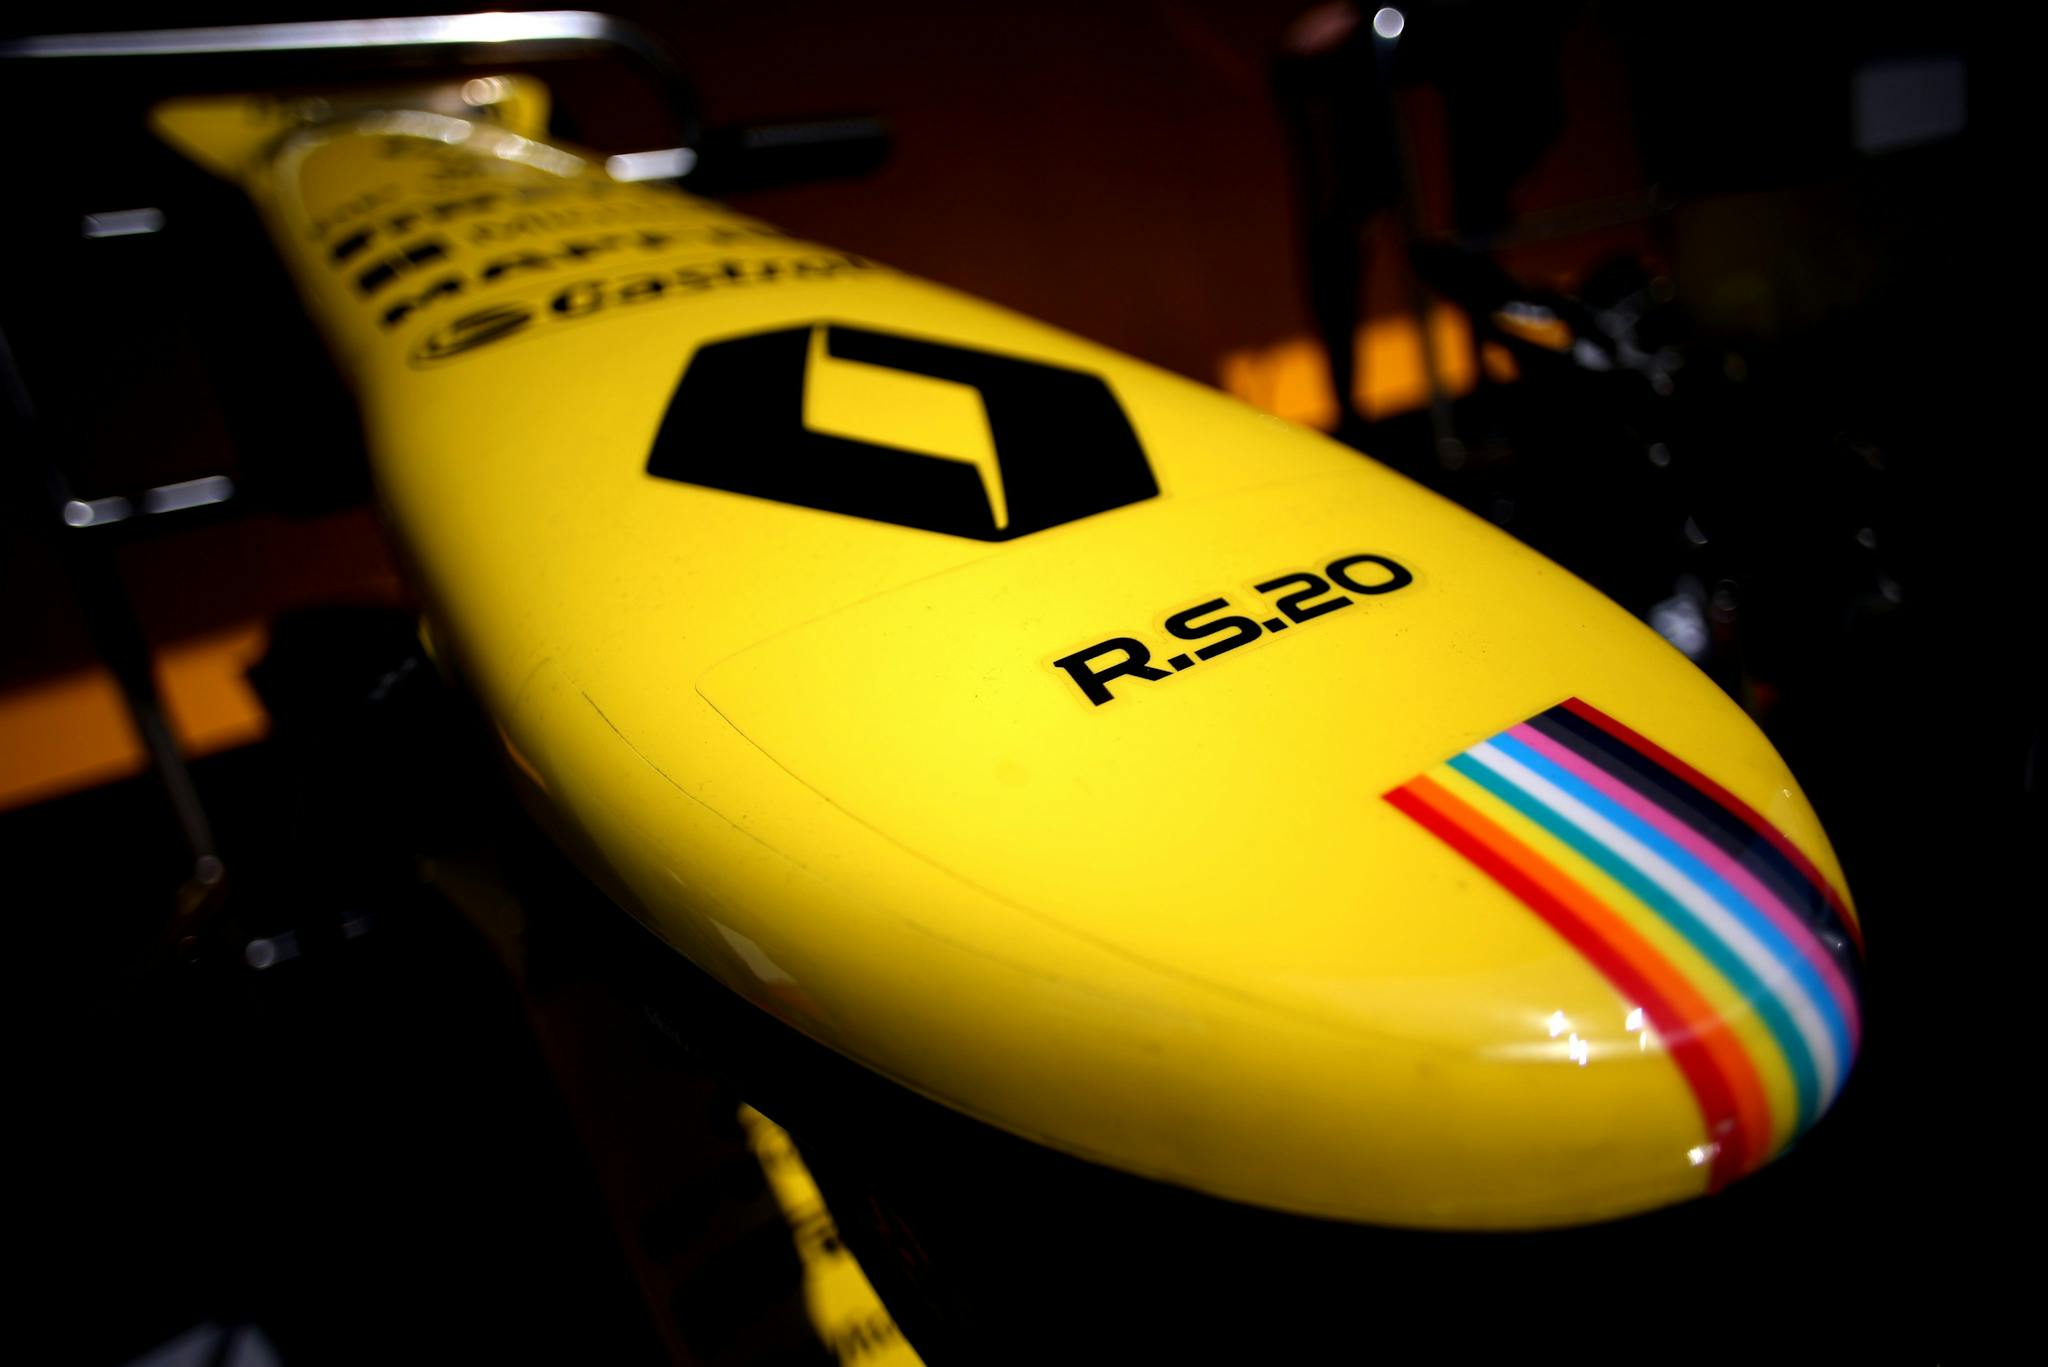 Renault wycofało apelację przeciwko Racing Point